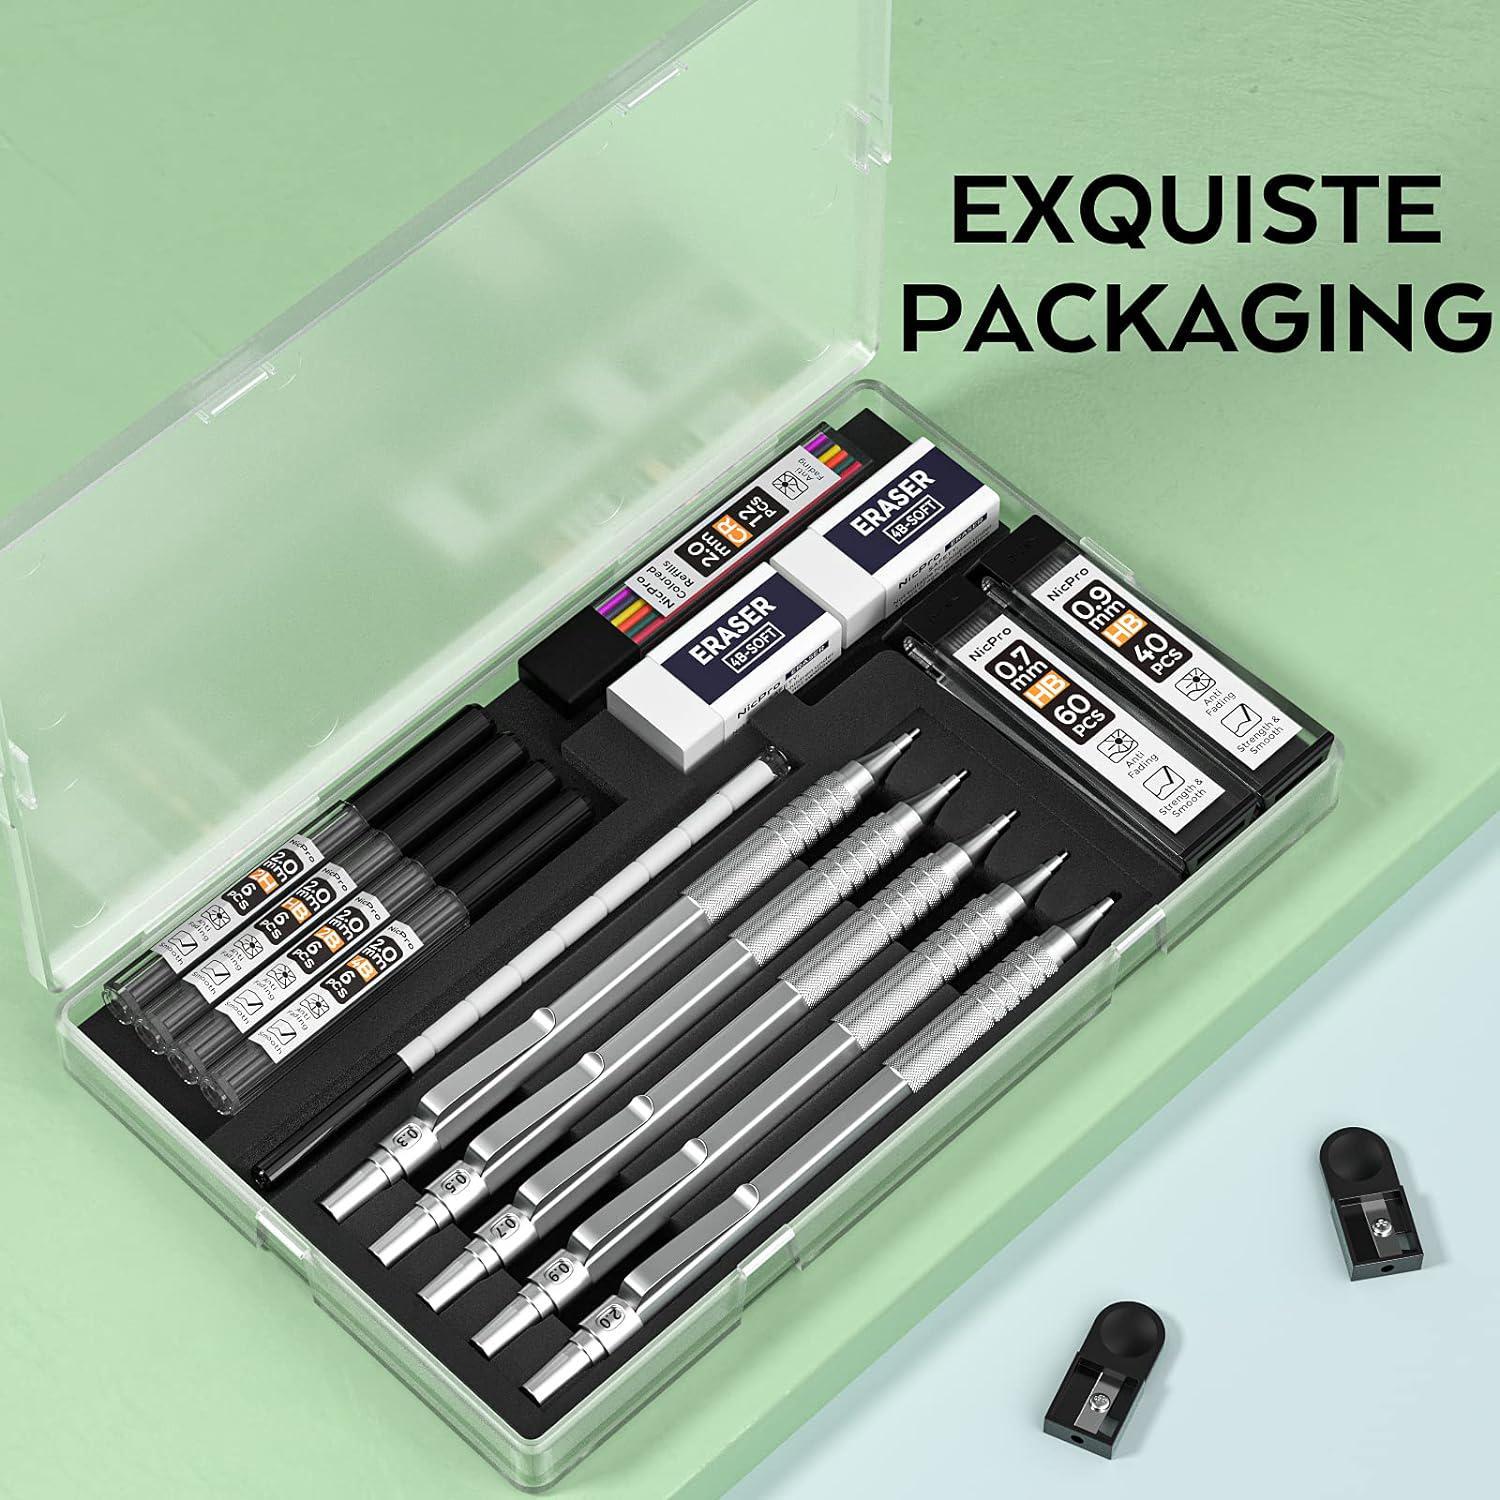 Four Candies 05mm Mechanical Pencil Set with Case - 4pcs Metal Mechanical Pencils, 6 Tubes HB #2 Lead Refills, 3pcs 4b E